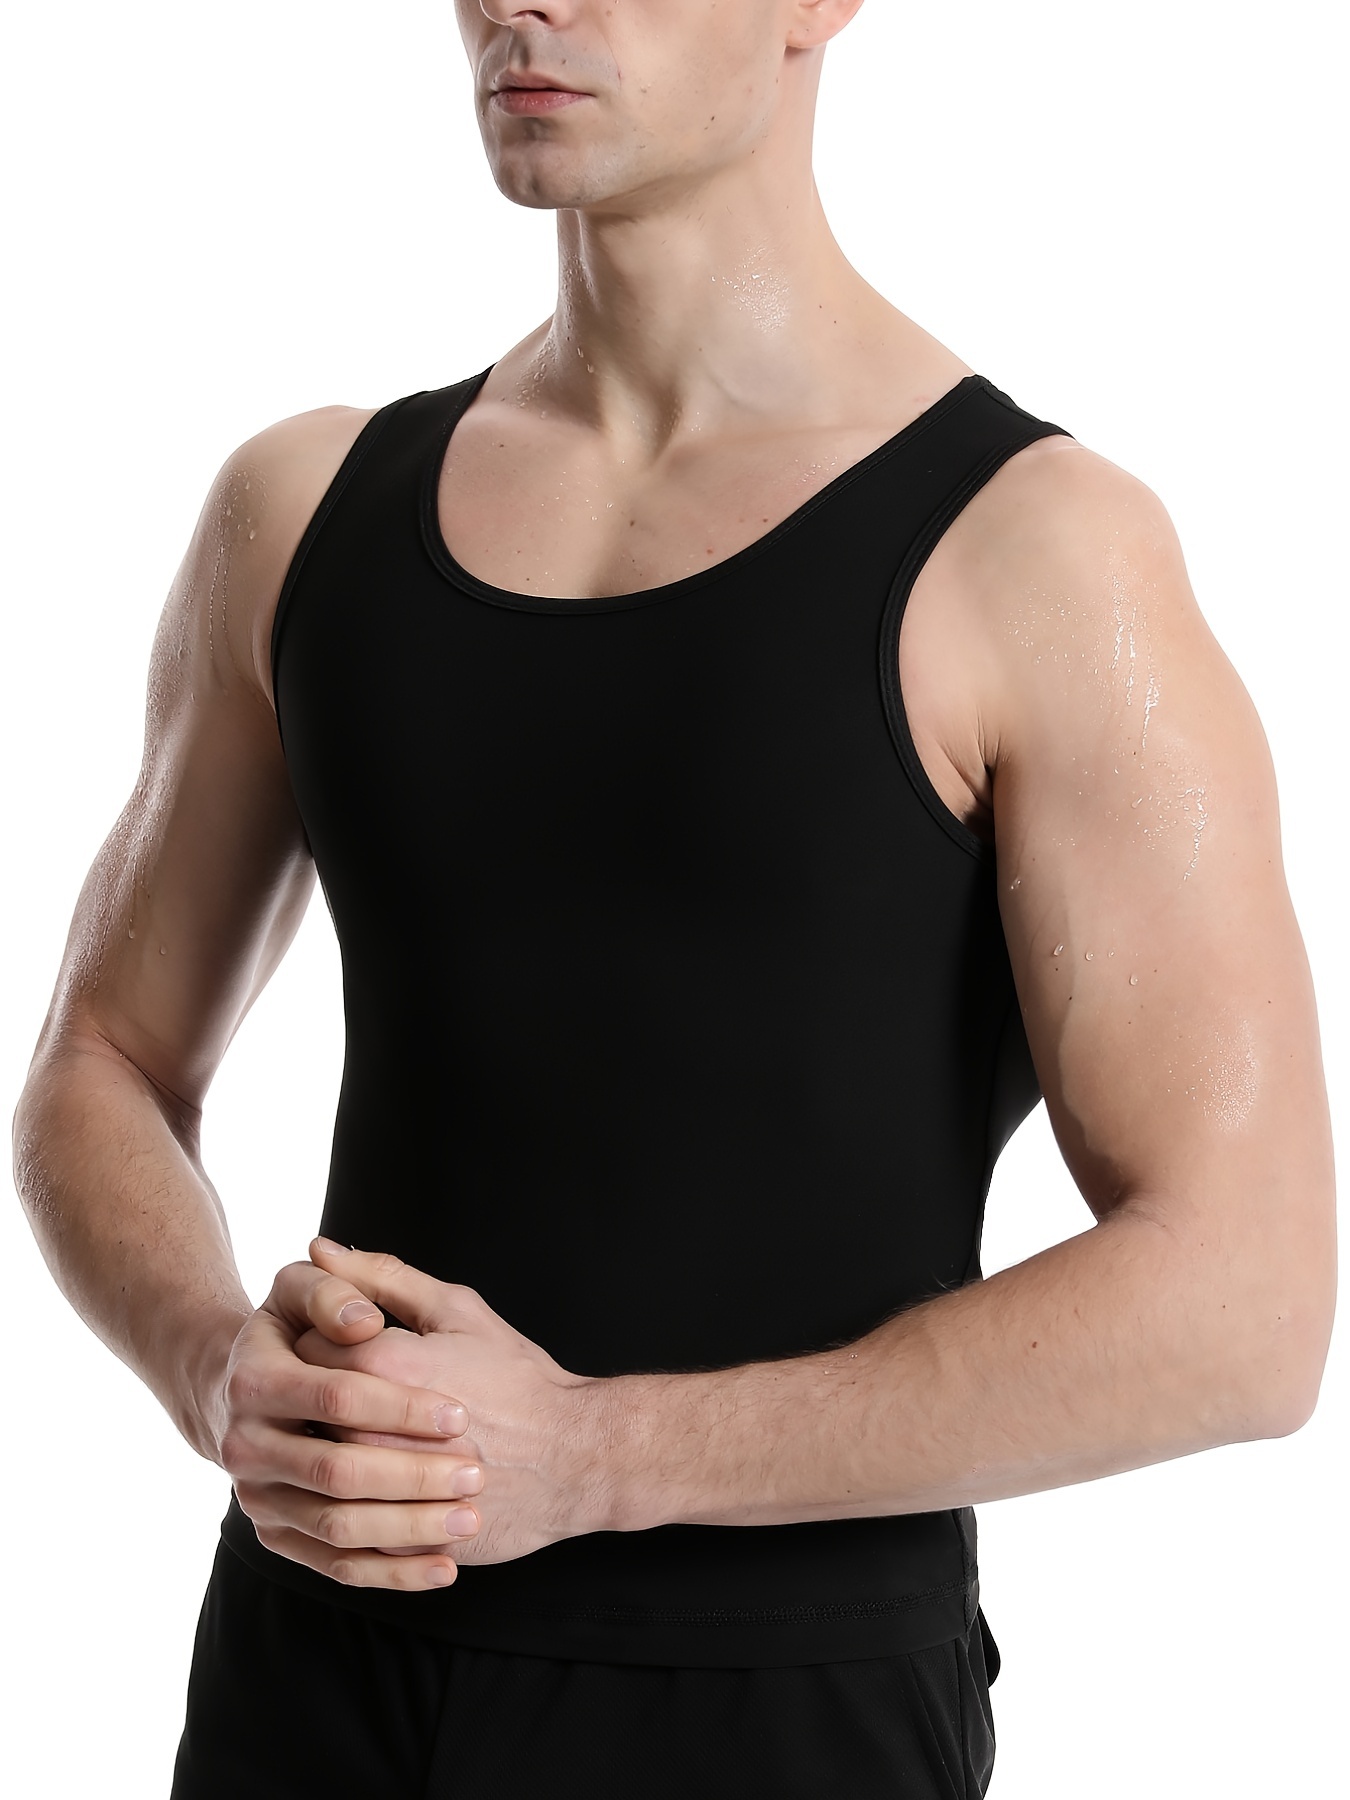 Men's Compression Shirt Tank Top Zipper Body - Temu Canada